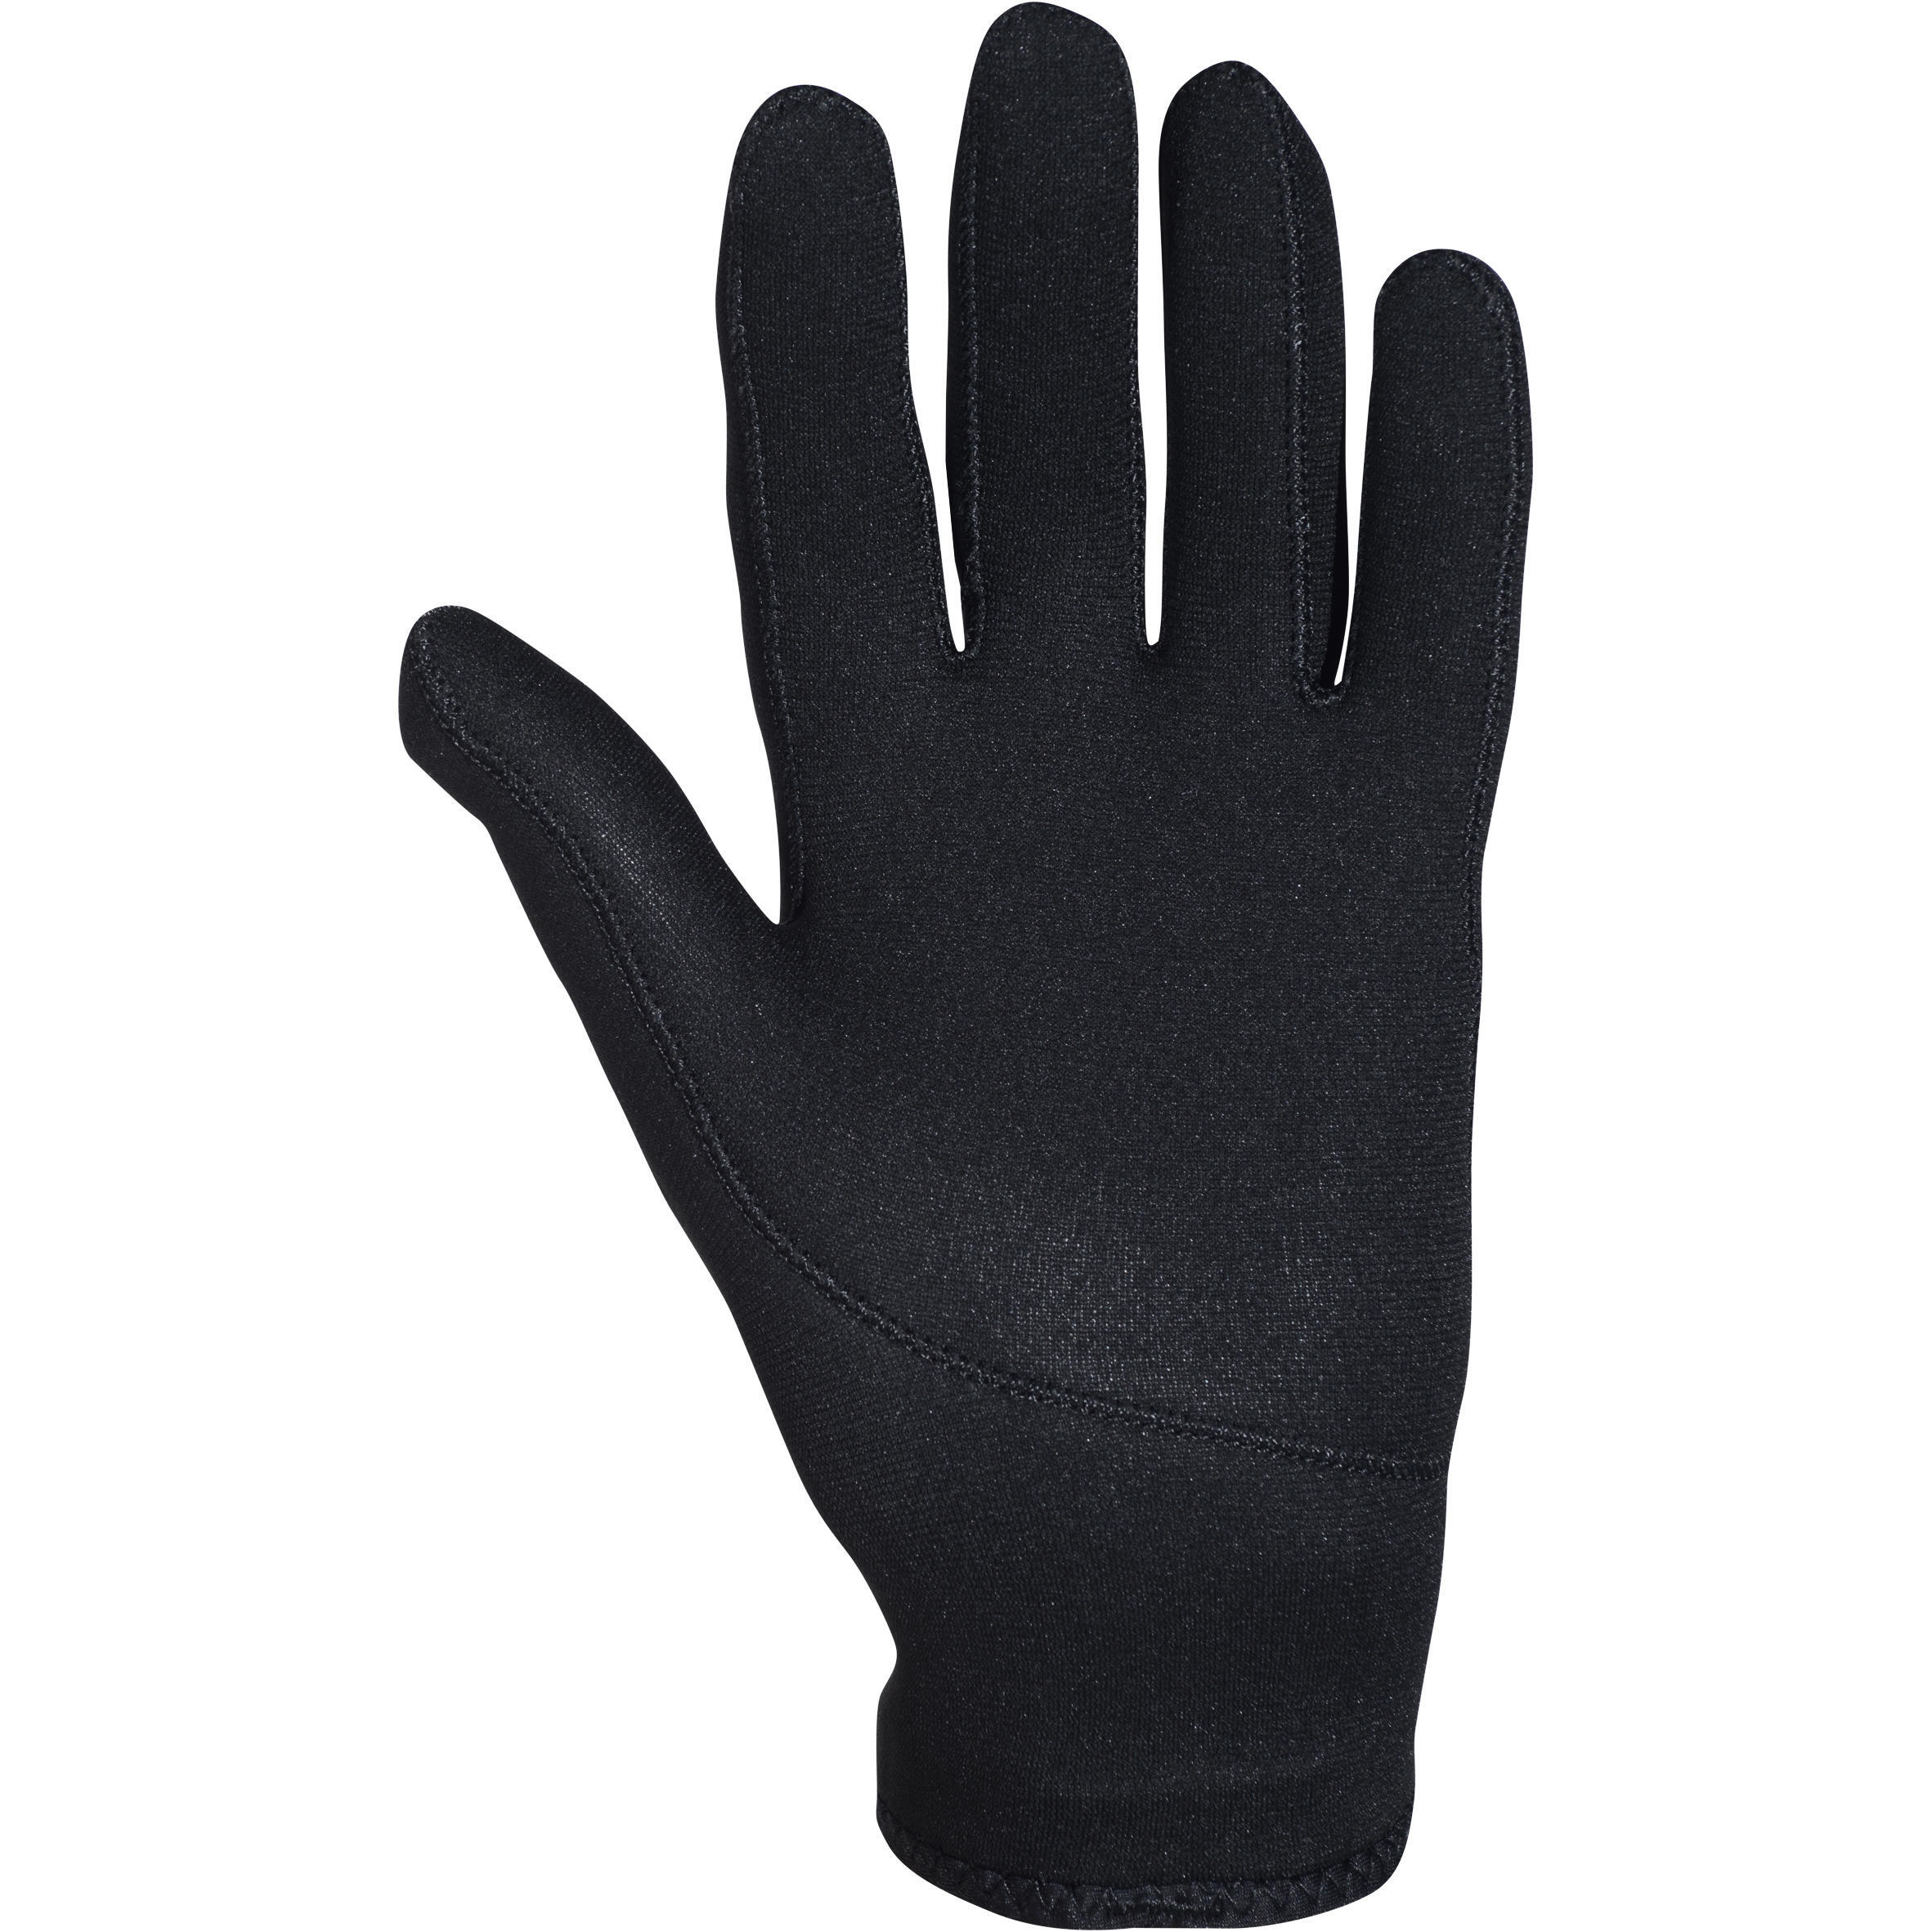 Diving gloves 2 mm neoprene black 2/9